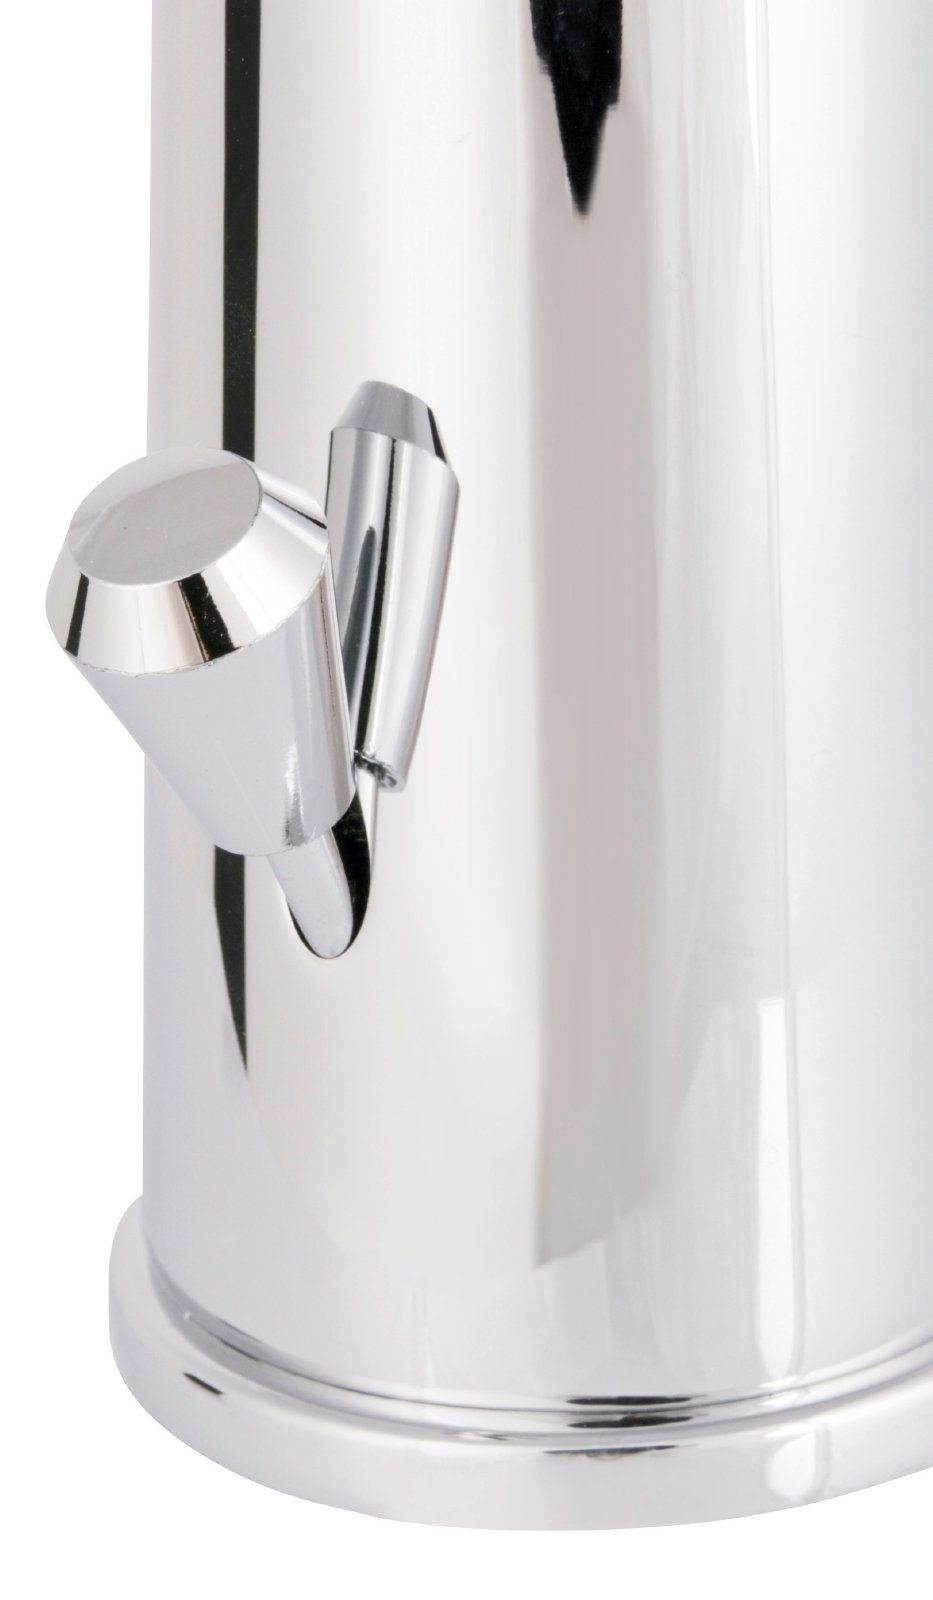 Style aquaSu Jetmix Waschtischarmatur Wasserspar-Kartusche, Hochdruck, 795531 Einhebelmischer, Chrom,